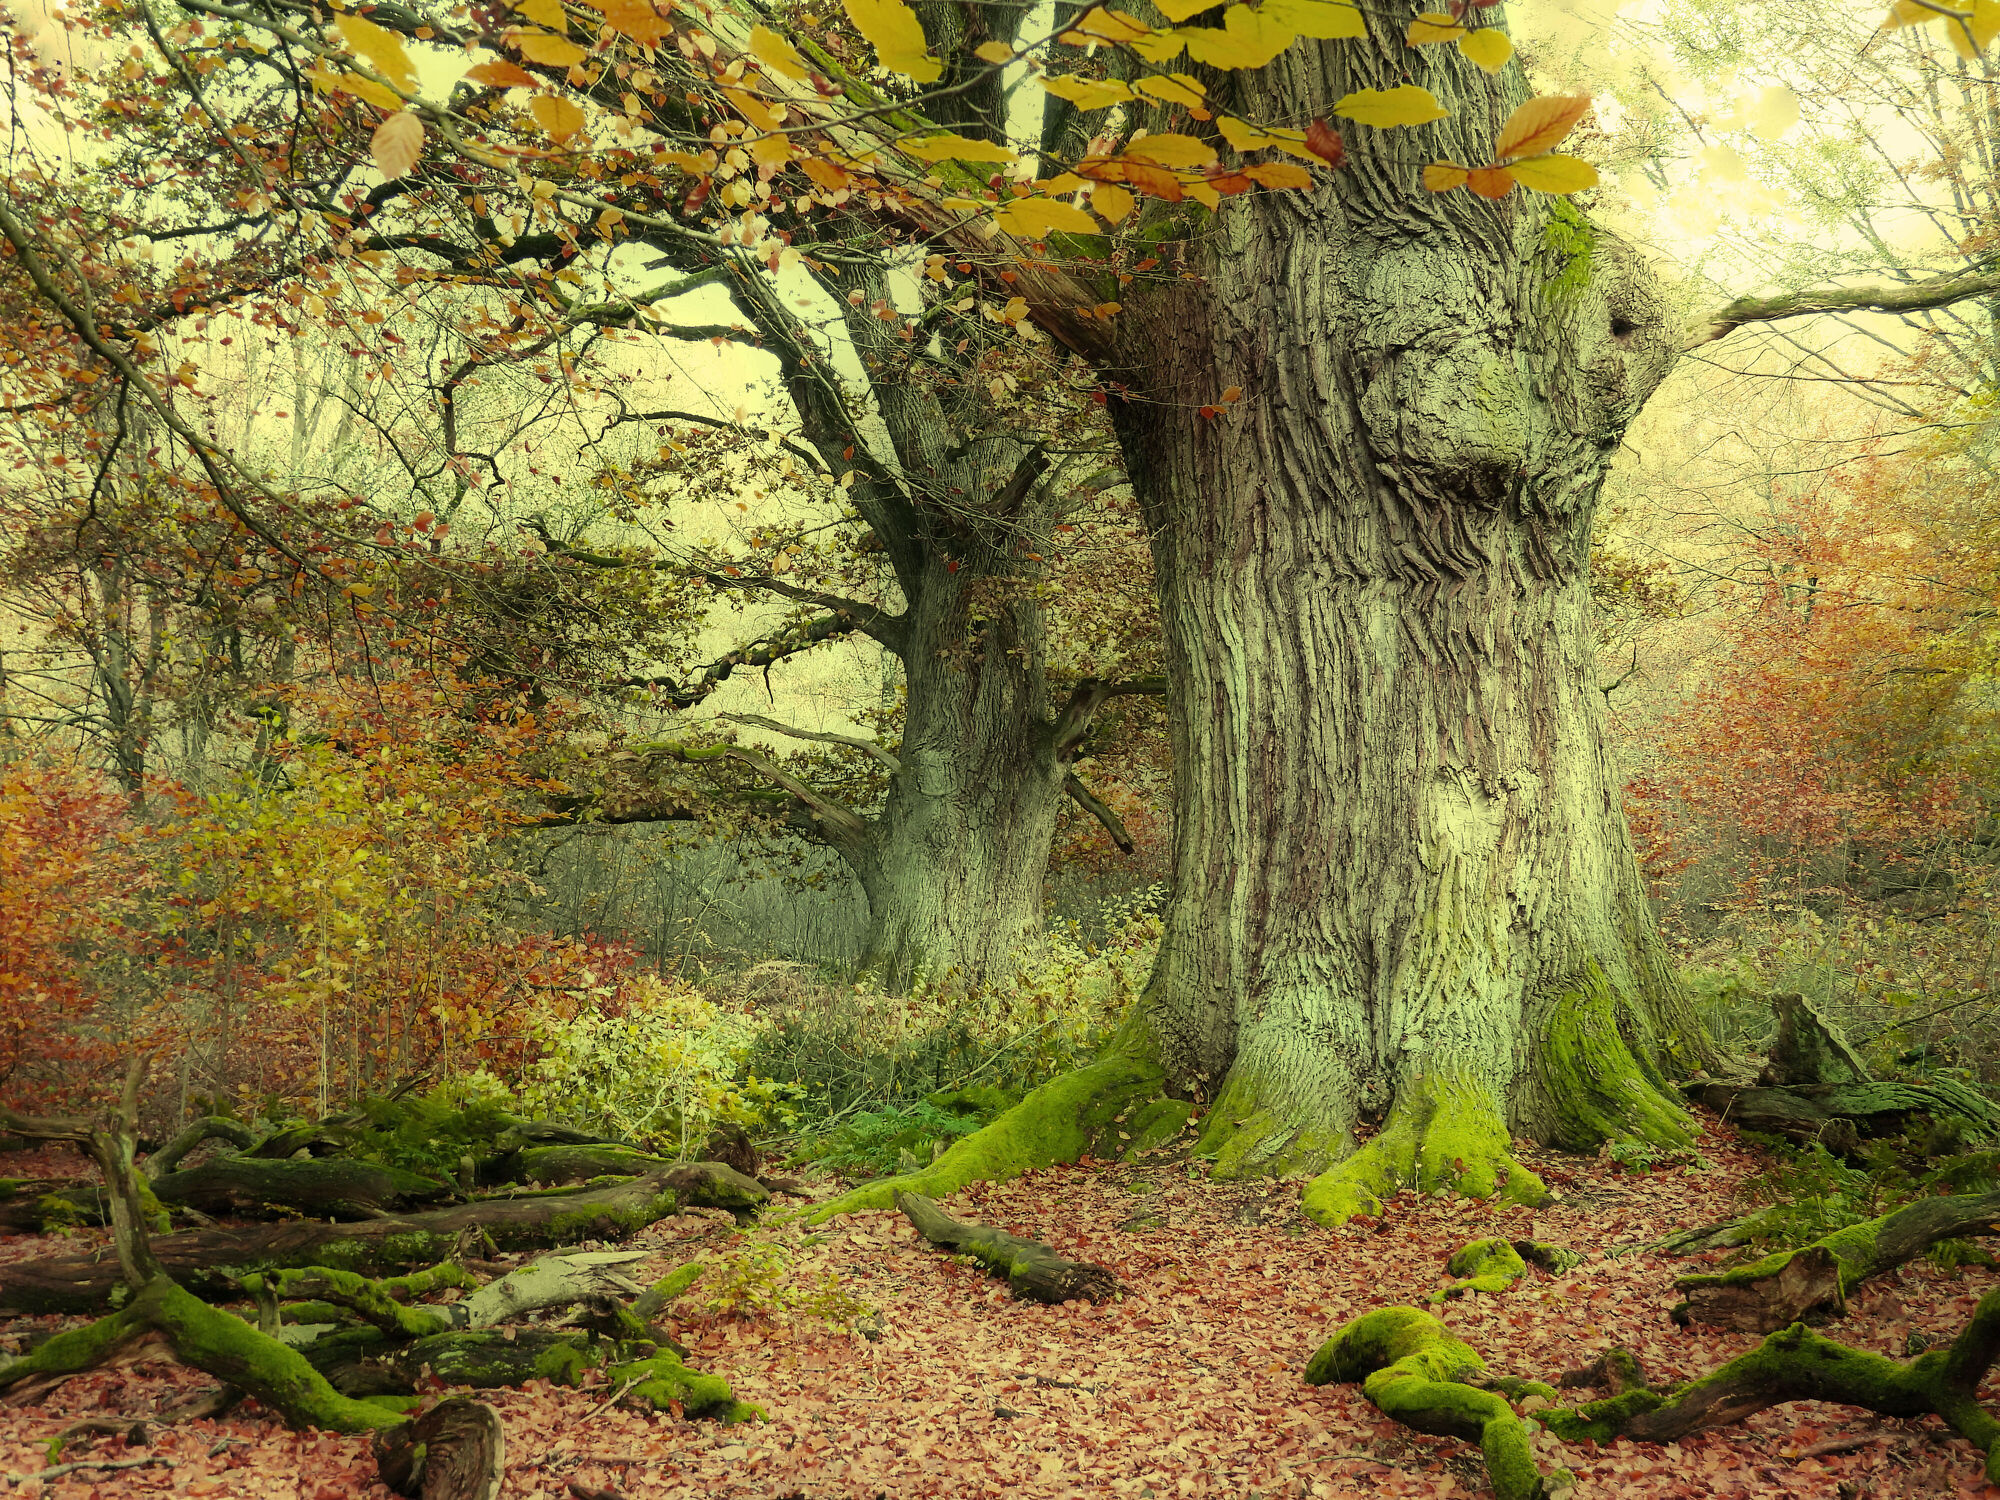 Bild mit Natur, Herbst, Laubbäume, Wald, Märchenwald, Waldblick, Landschaften im Herbst, Fotografien Landschaften/Wälder, Eichenwald, Waldbaden